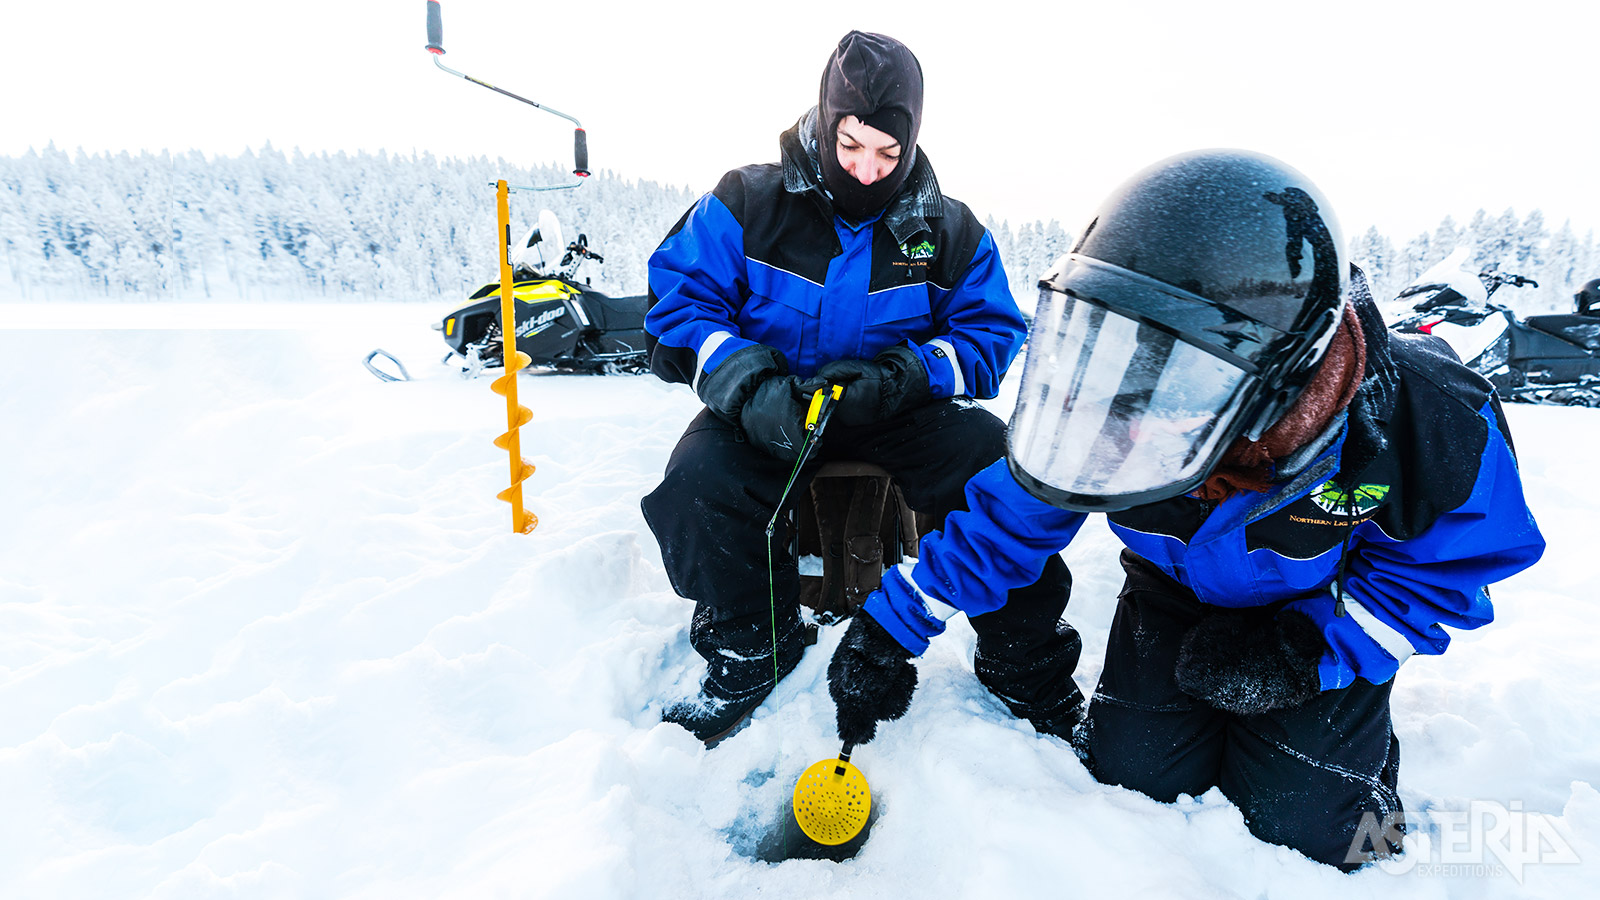 Tijdens een tocht met de sneeuwscooter  maak je even een stop op een bevroren meer om aan ijsvissen te doen